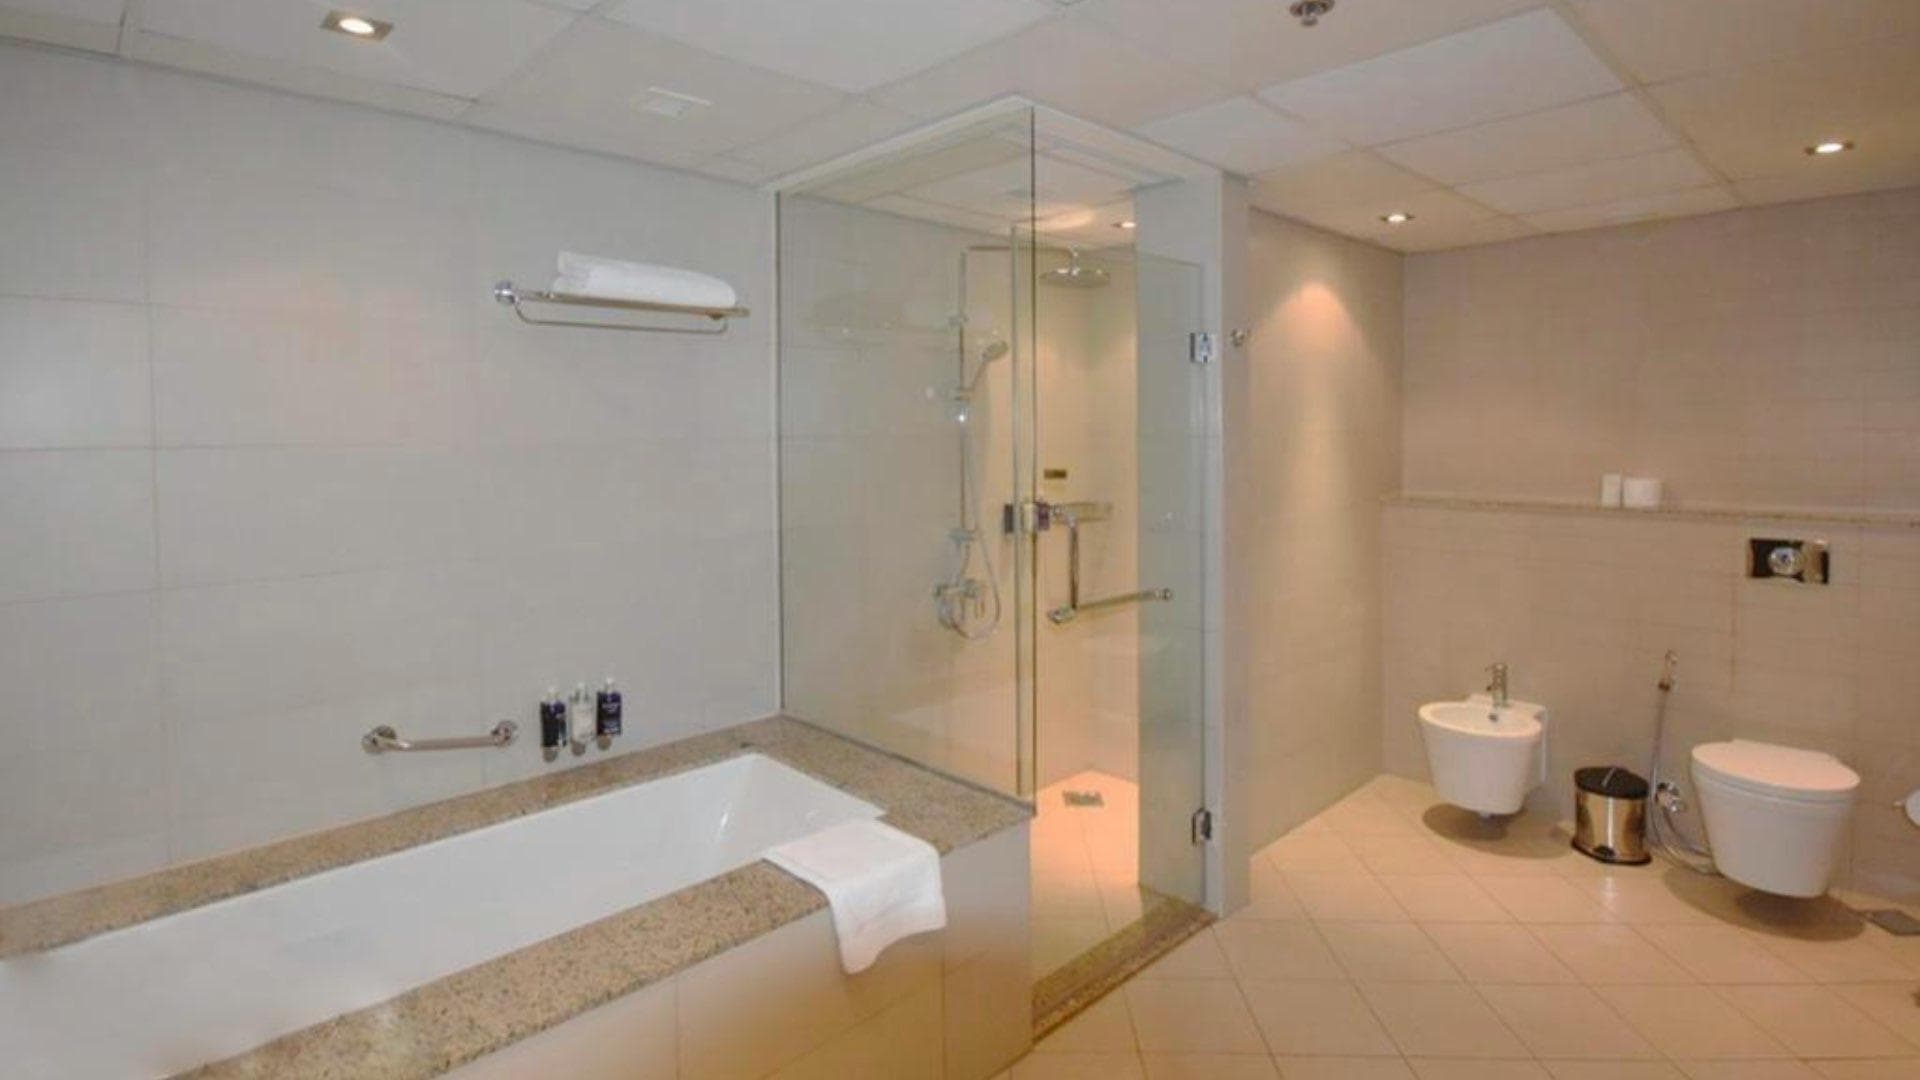 1 Bedroom Apartment For Rent Anantara Residences Lp37618 1e49212f19300f00.jpg